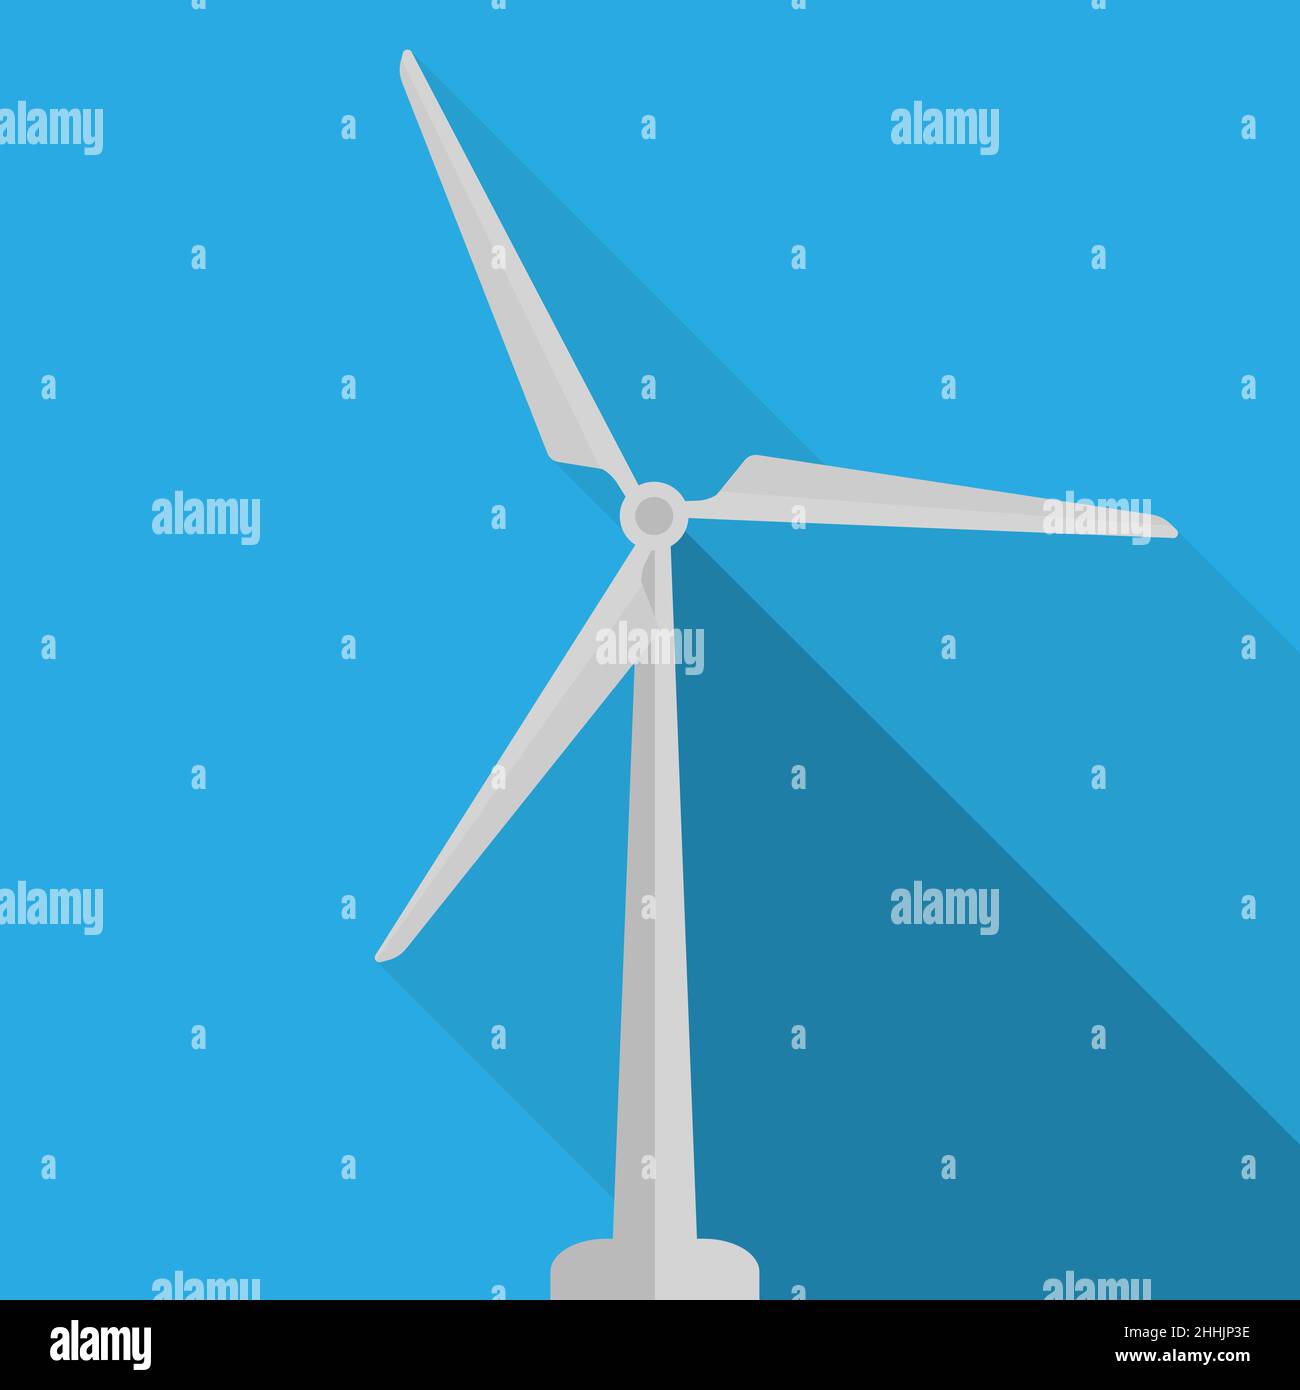 éolienne avec ombre portée sur fond bleu, symbole de la centrale éolienne, illustration vectorielle Illustration de Vecteur